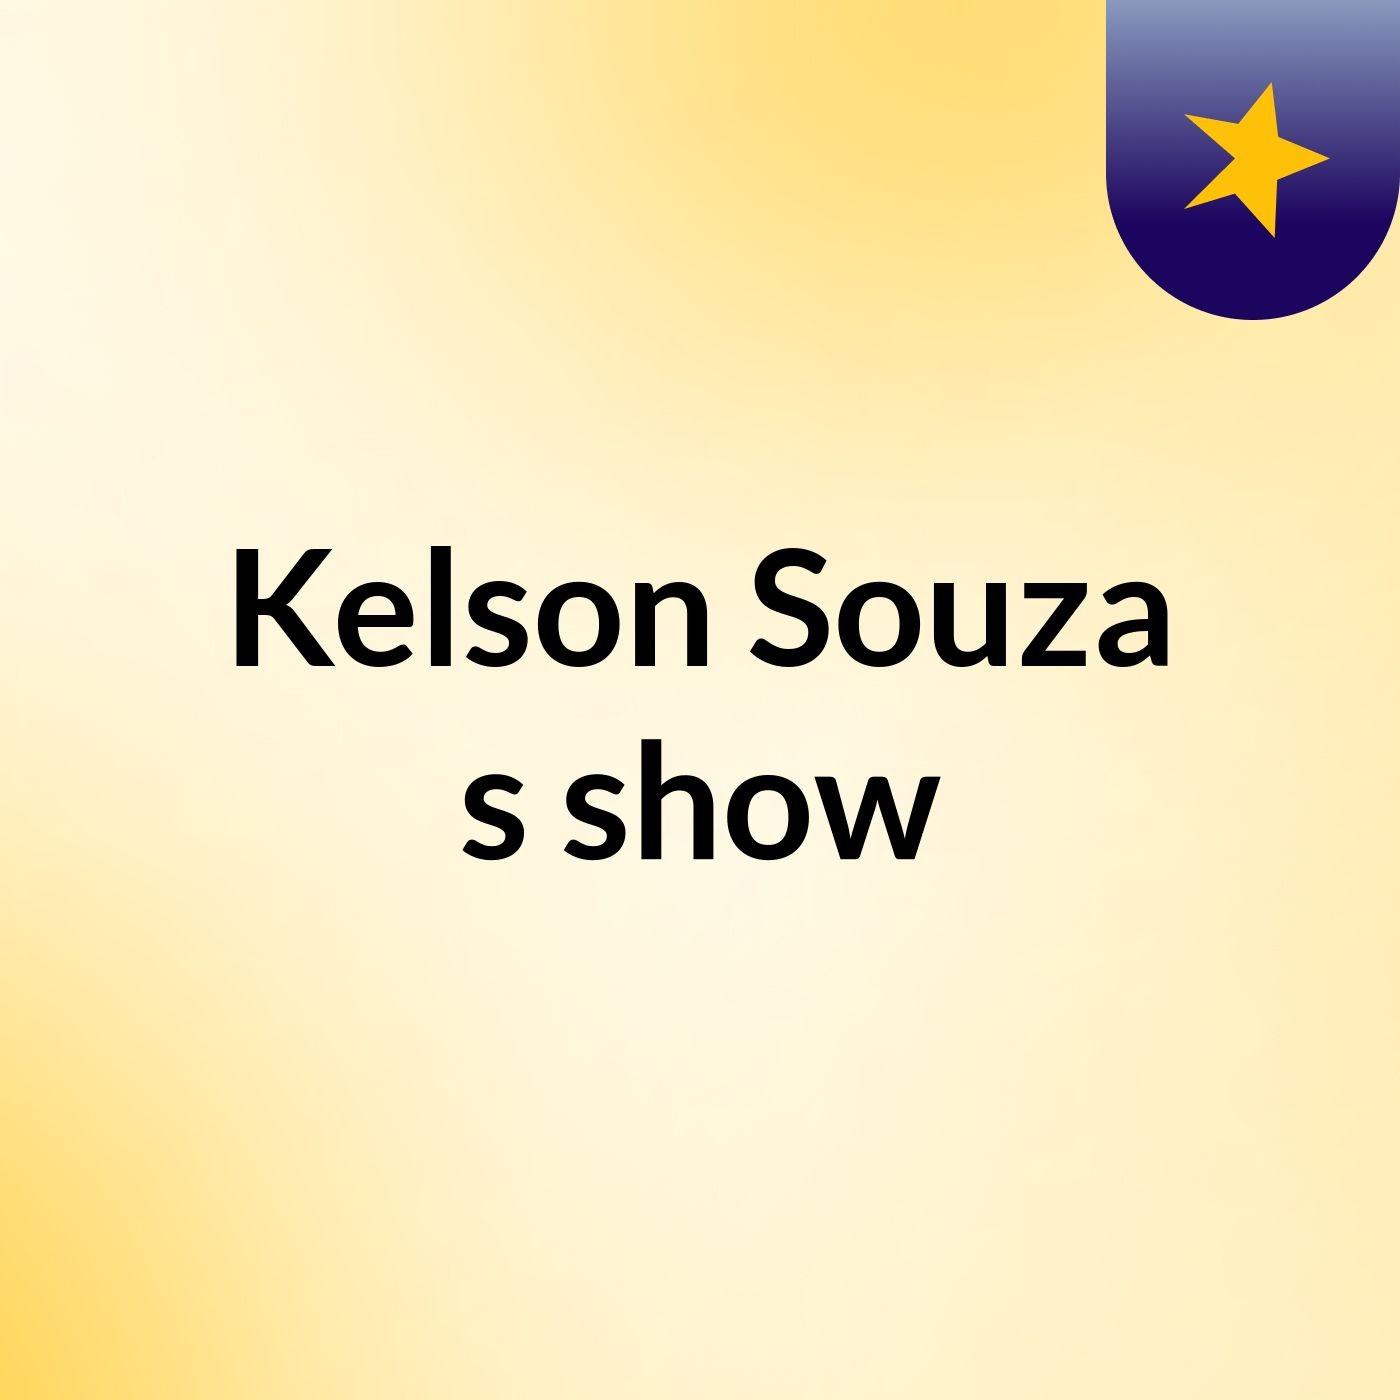 Kelson Souza's show